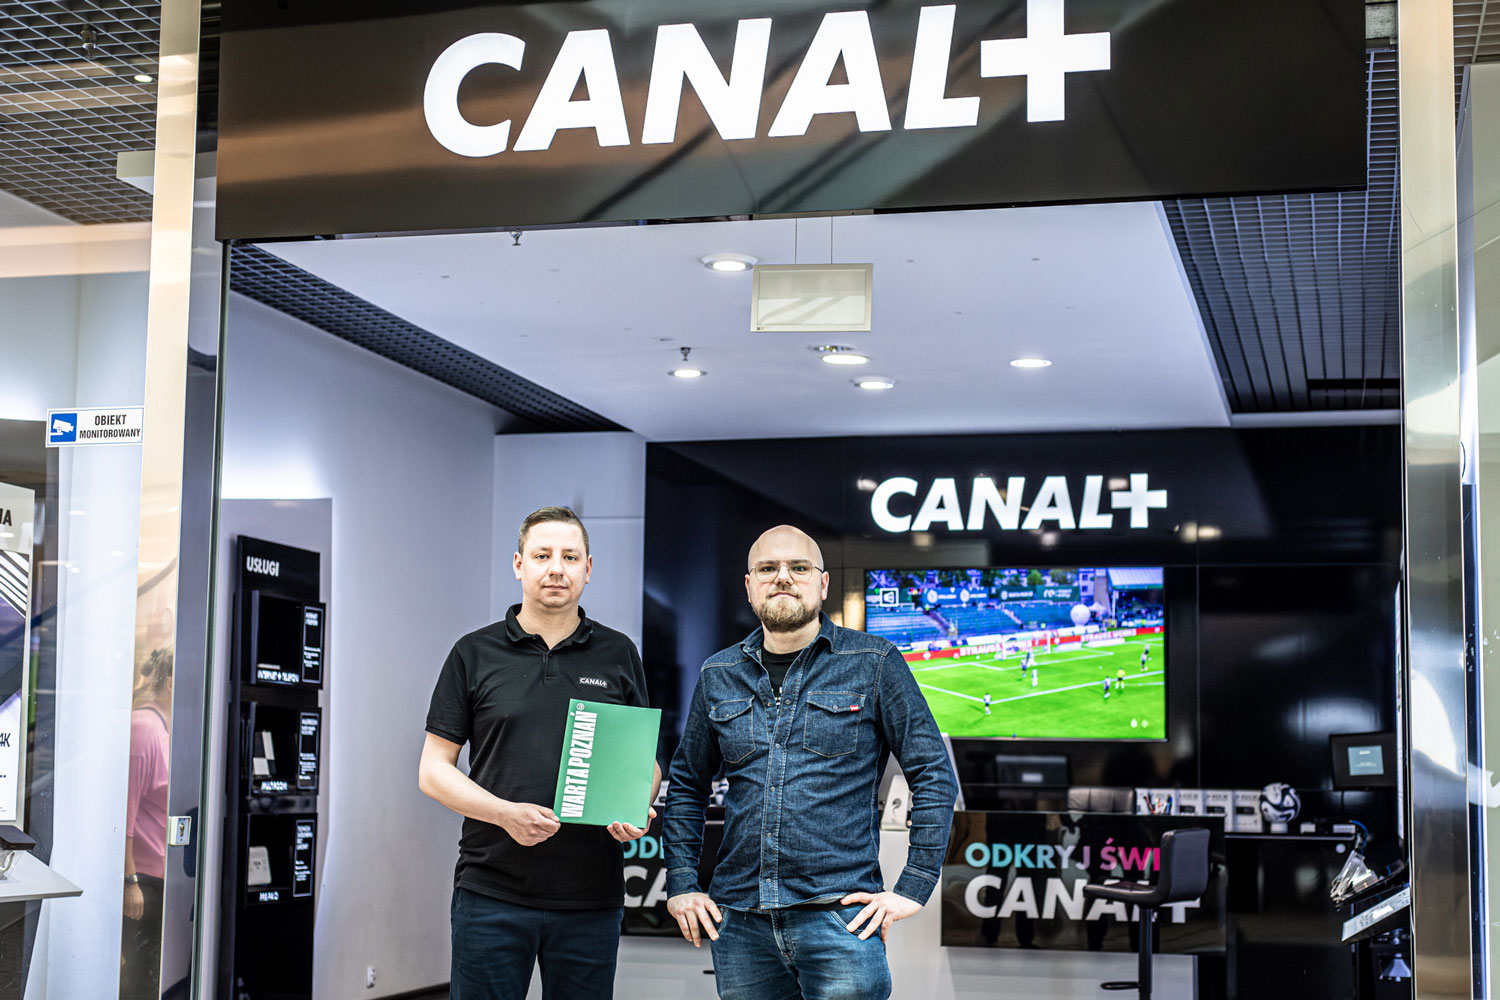 Salony Canal+ Pestka i Canal+ Posnania partnerami Warty Poznań